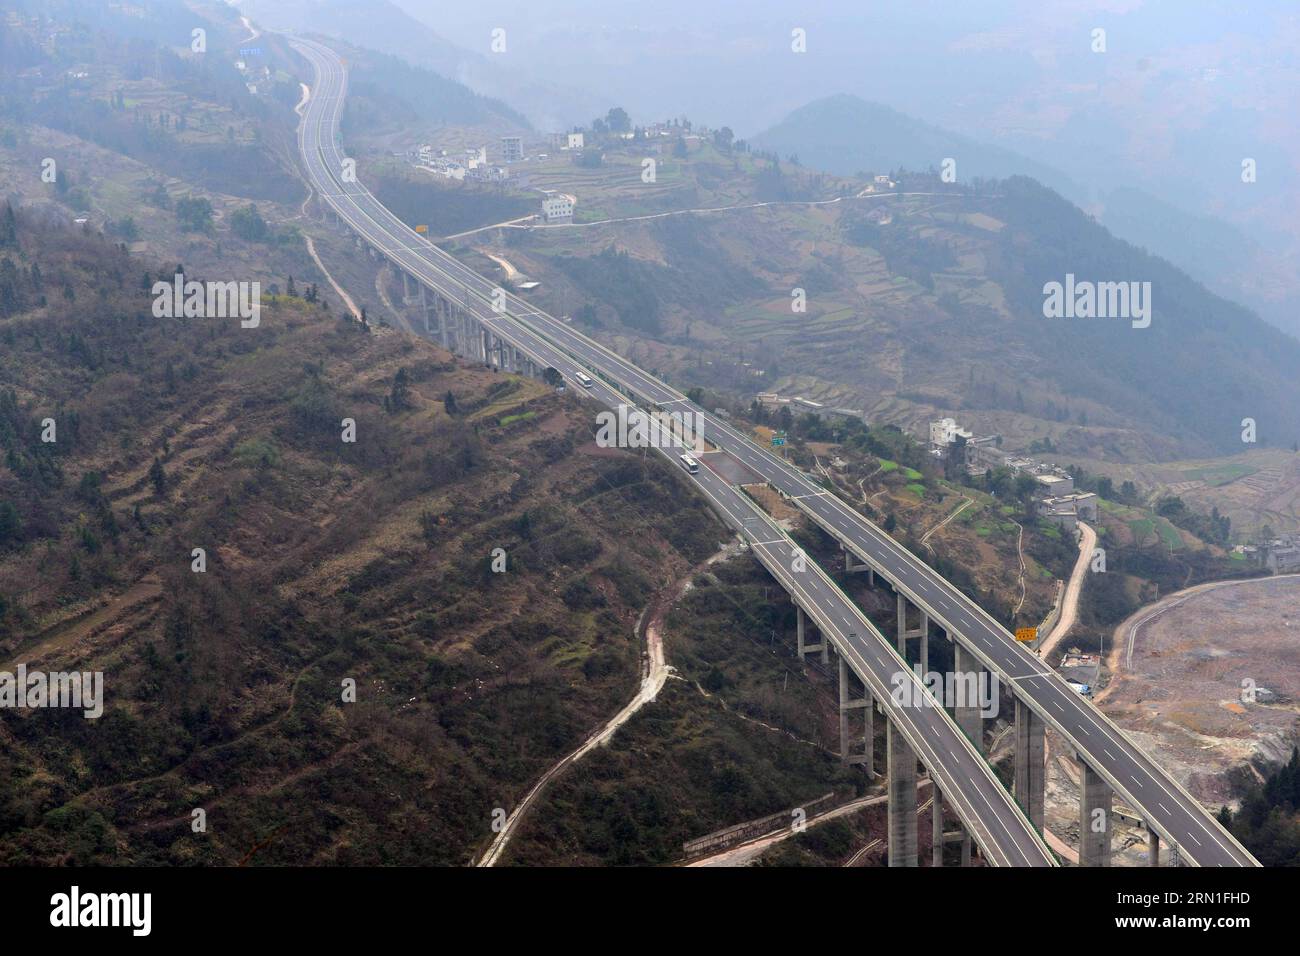 (141227) -- ENSHI, 27 dicembre 2014 -- foto scattata il 27 dicembre 2014 mostra un segmento della Shanghai-Chengdu Expressway nella contea di Badong di Enshi, nella provincia di Hubei della Cina centrale. L'autostrada di Shanghai-Chengdu, lunga 1.966 chilometri, è stata messa in funzione il 27 dicembre, collegando il comune di Shanghai, le province di Jiangsu e Anhui nella Cina orientale, la provincia di Hubei nella Cina centrale, il comune di Chongqing e la provincia di Sichuan nel sud-ovest della Cina. (Yxb) CHINA-SHANGHAI-CHENGDU-EXPRESSWAY (CN) YangxShunpei PUBLICATIONxNOTxINxCHN Enshi DEC 27 2014 la foto scattata IL DEC 27 2014 mostra un segmento dello Shanghai Chen Foto Stock